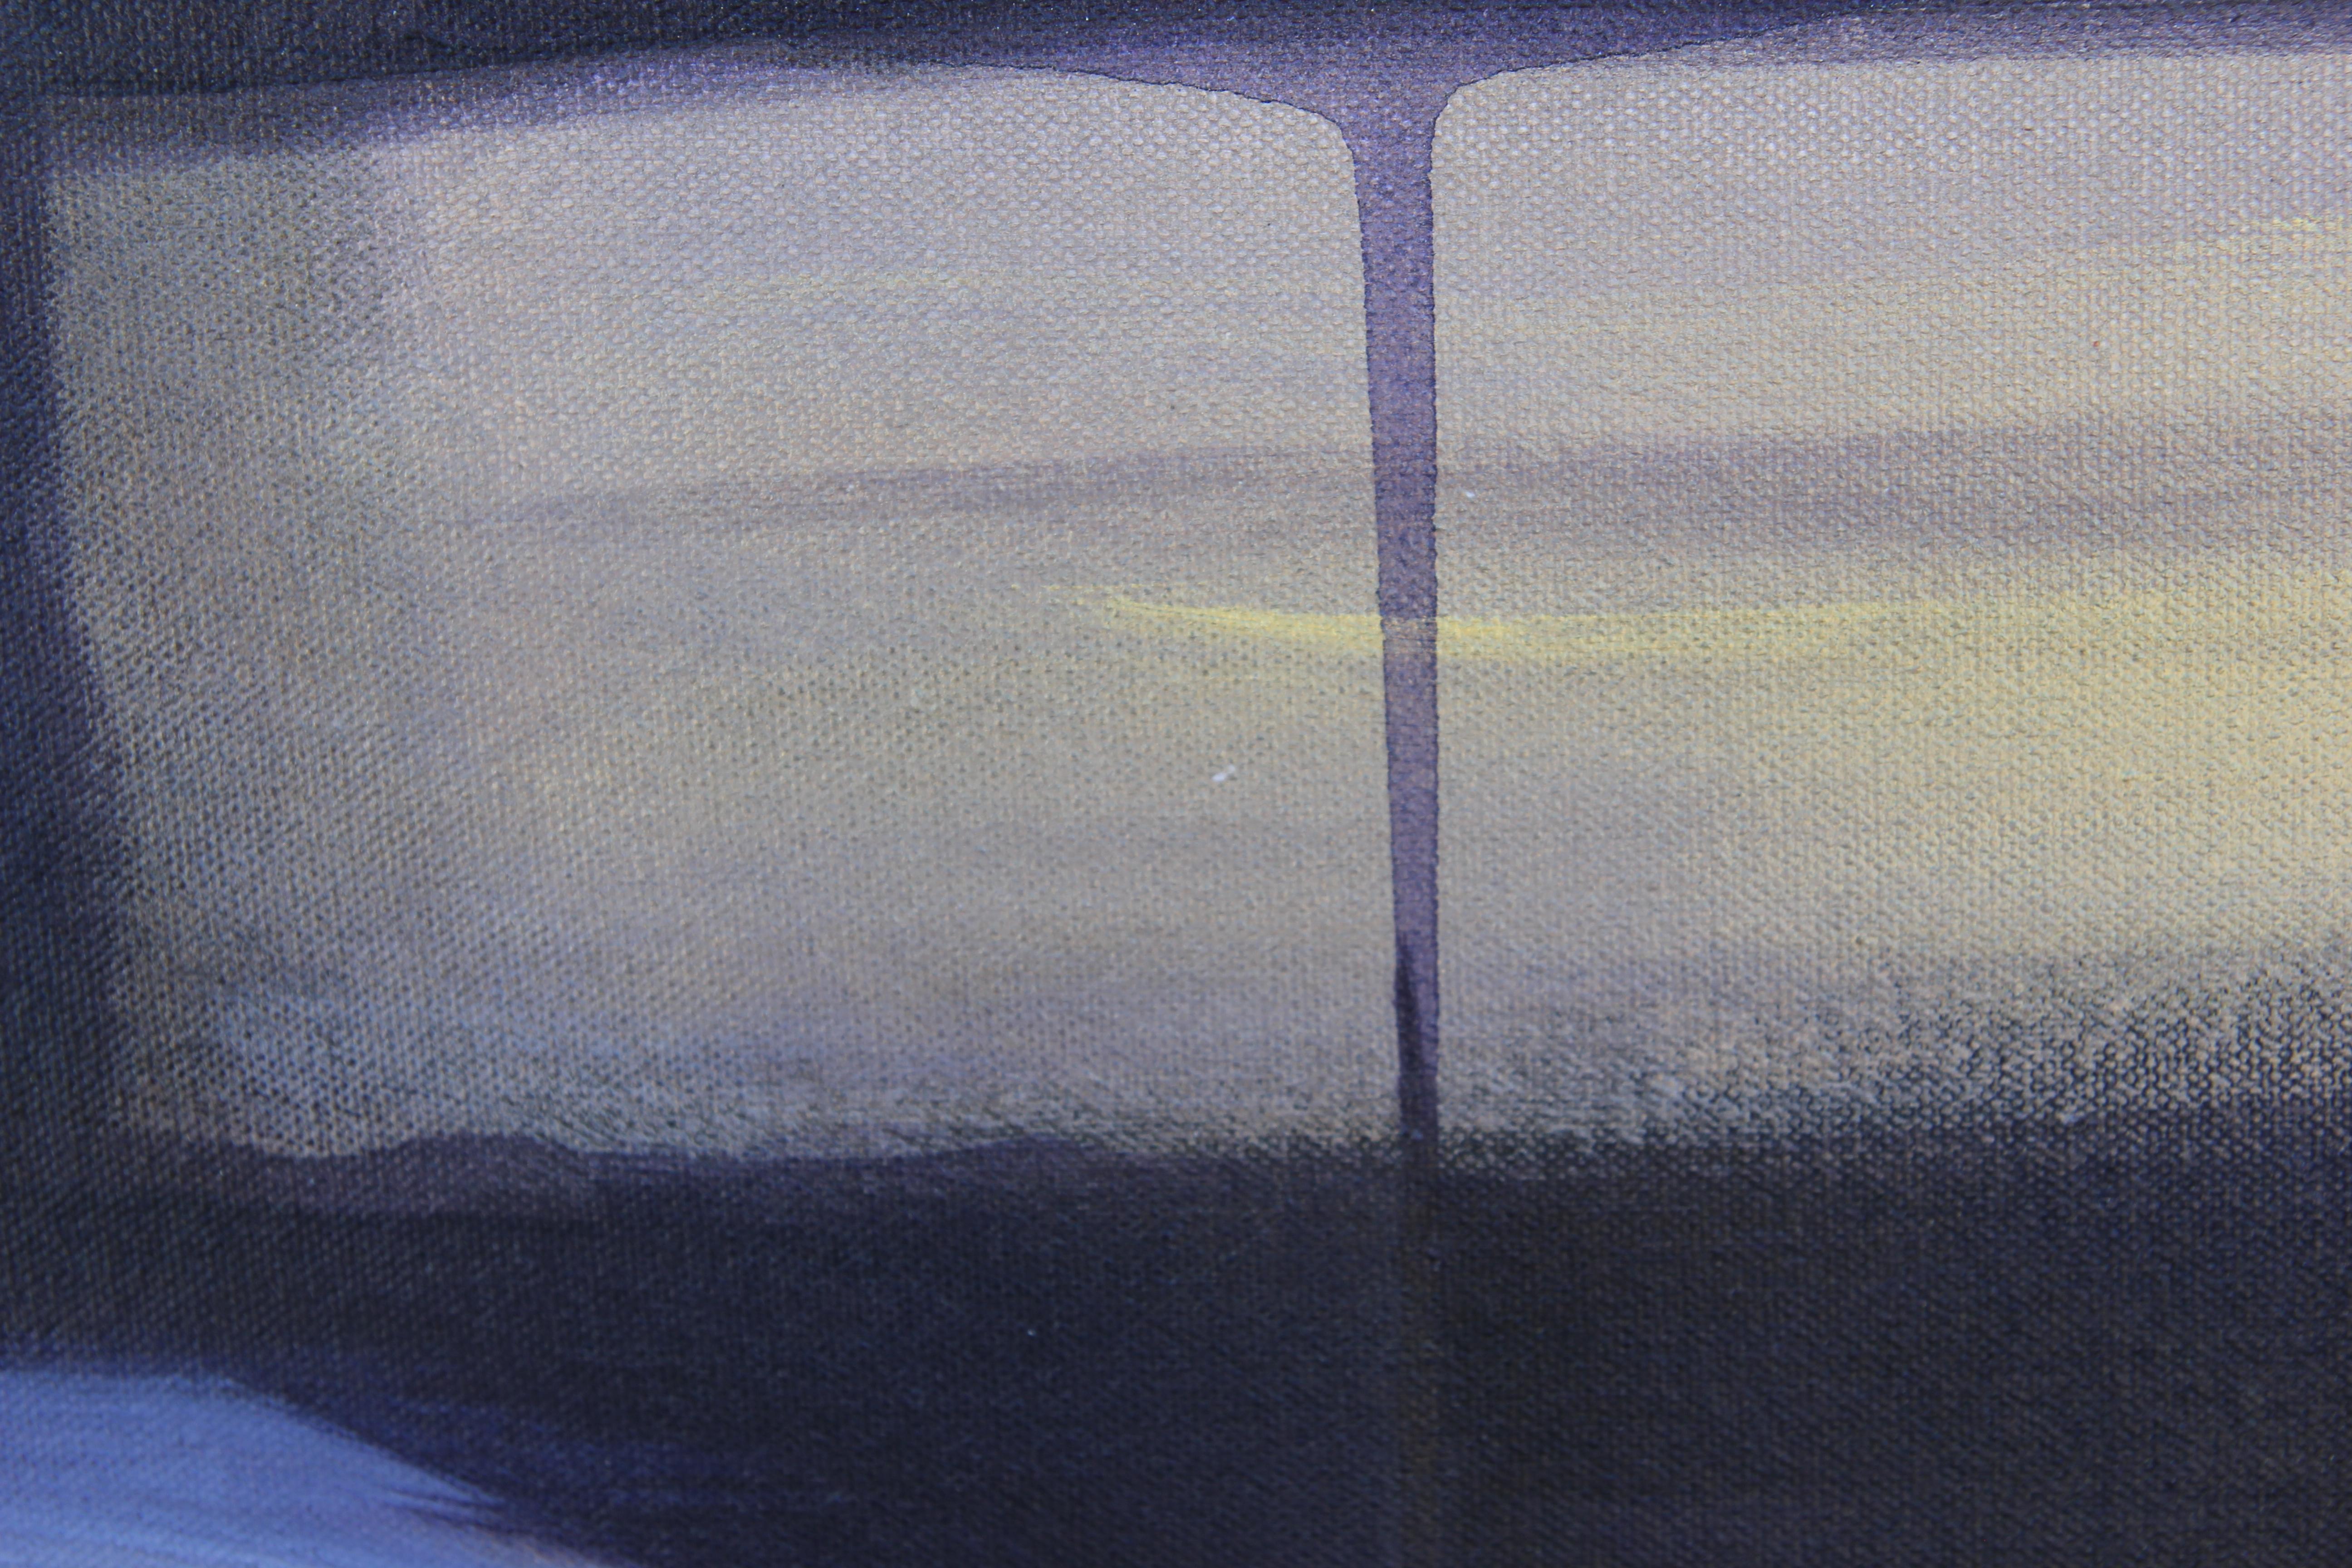 Peinture expressionniste abstraite moderne influencée par les peintures à champs de couleurs de Mark Rothko qui incorpore des tons violets et jaunes. Signé, titré et daté au dos. Actuellement encadré, mais des options d'encadrement sont disponibles.